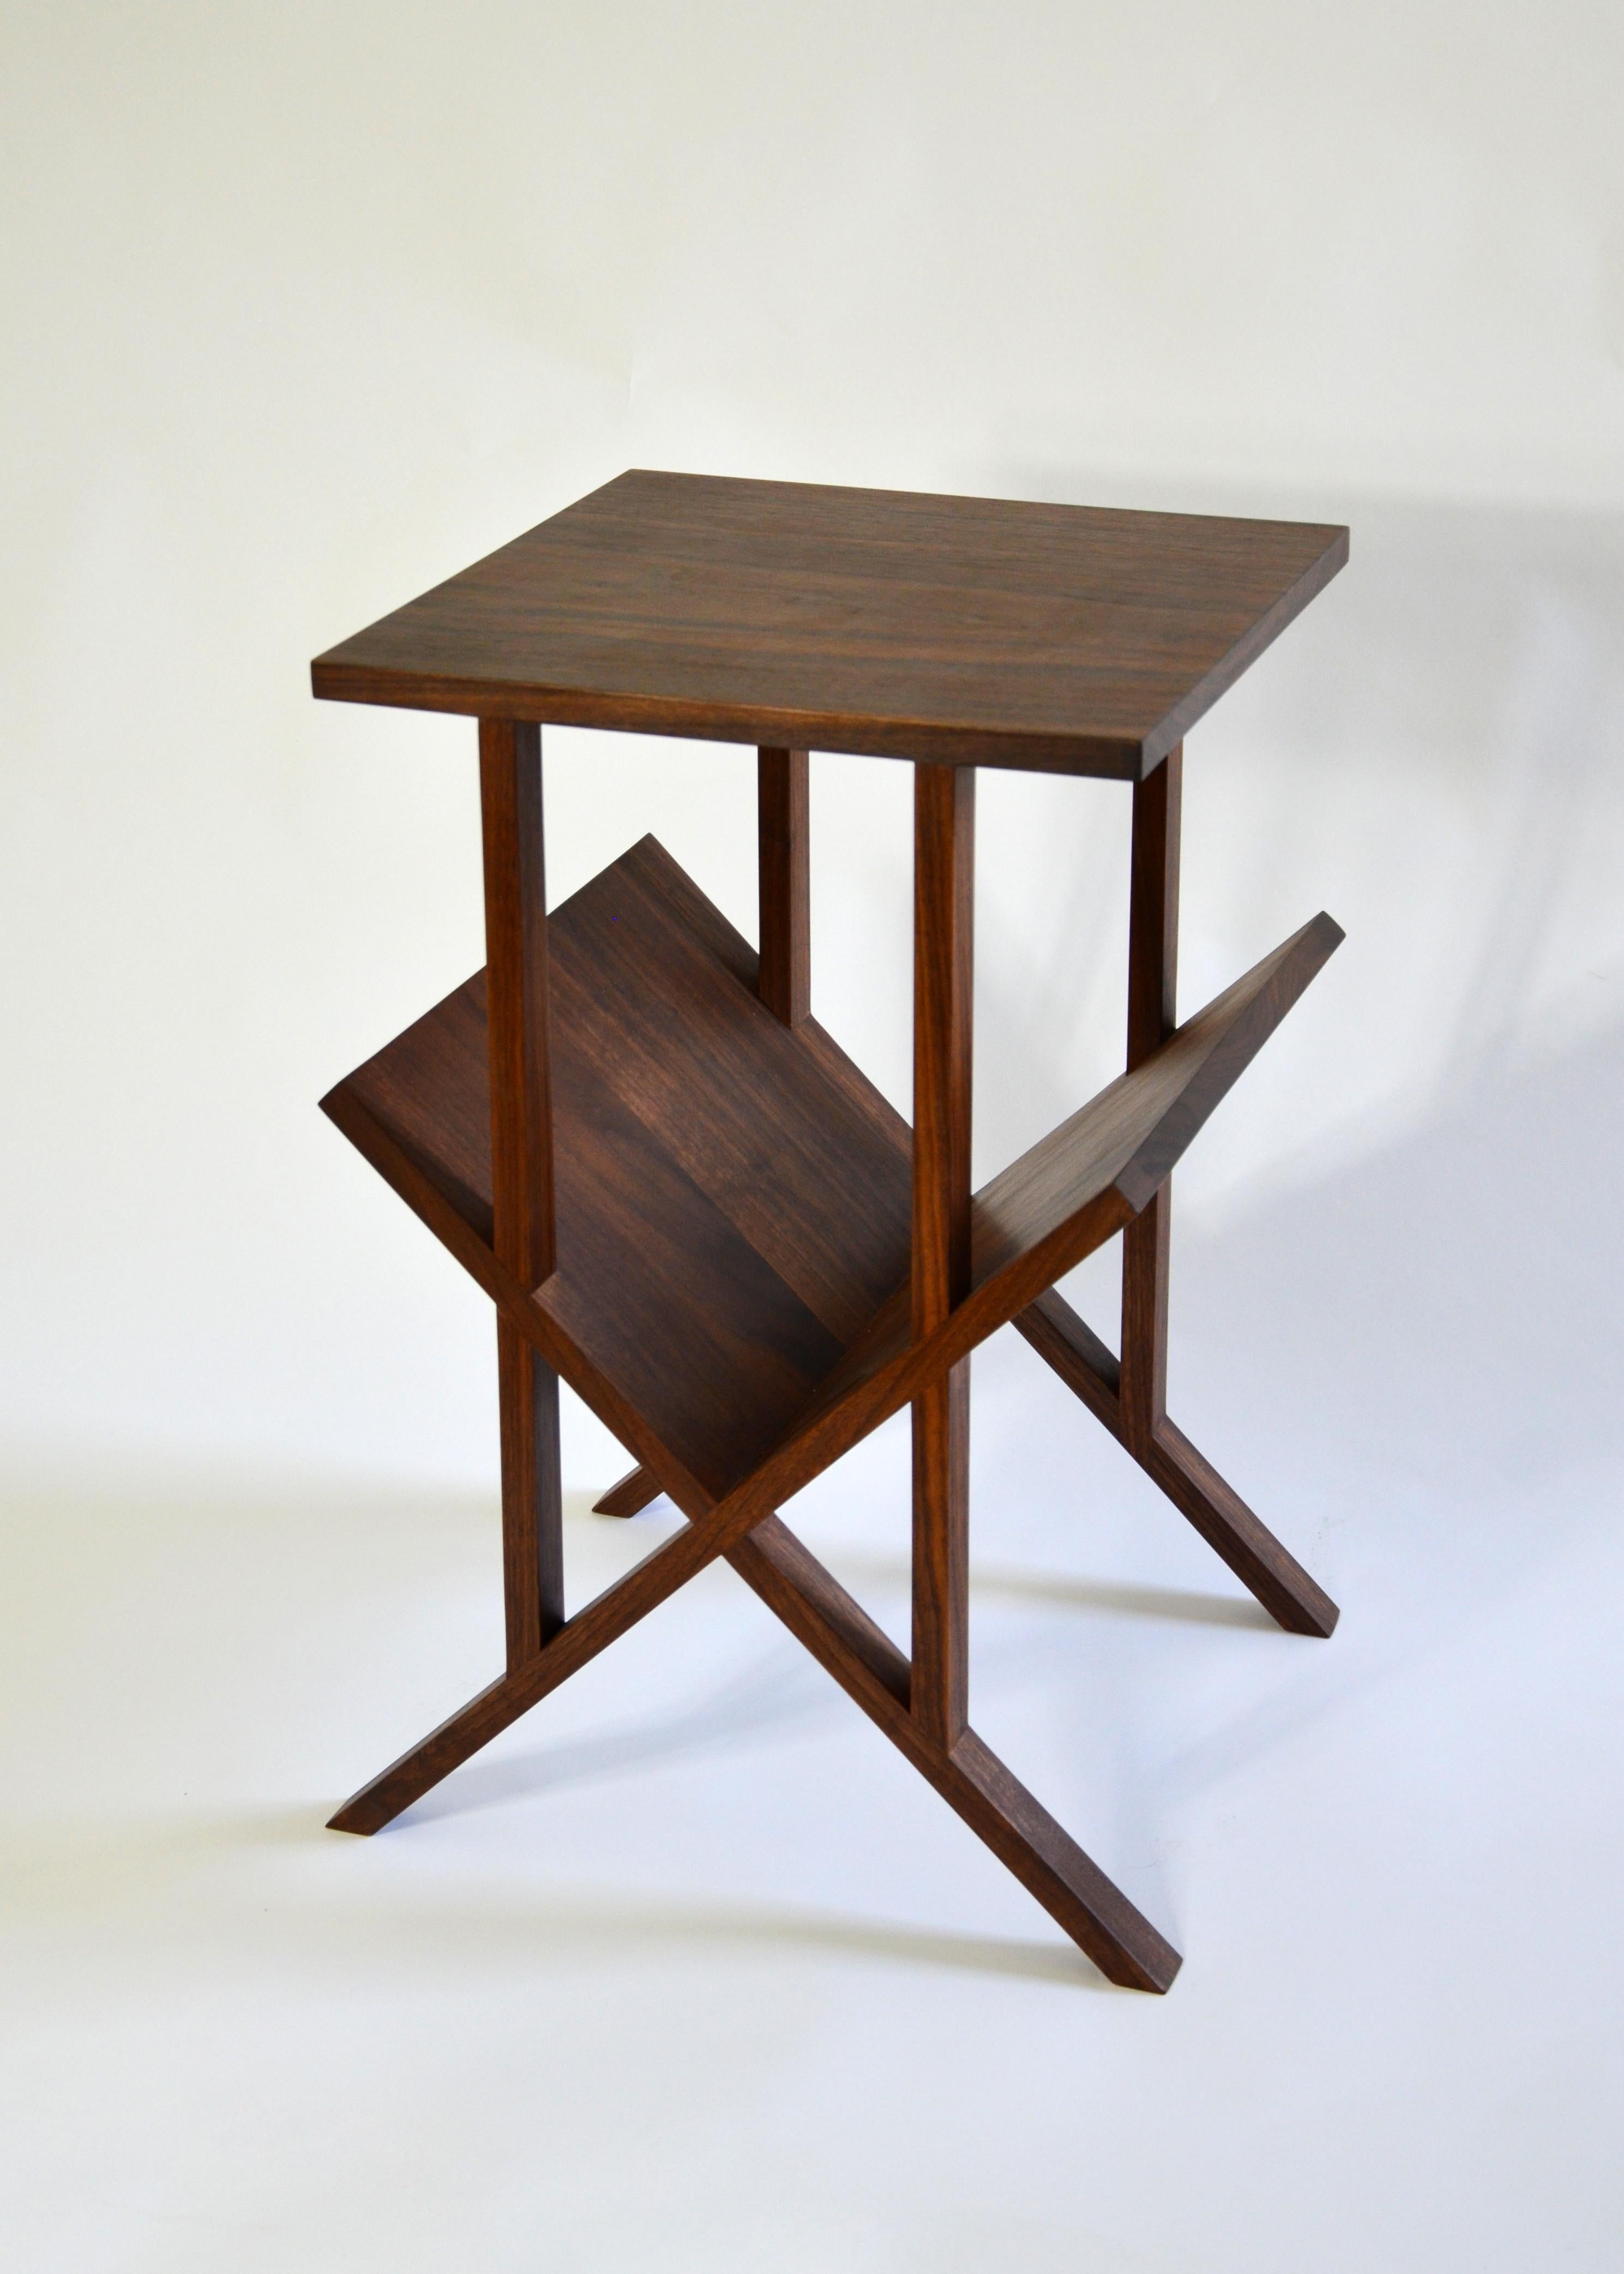 Der minimalistische und raffinierte Lap Table ist ein vielseitiges Stück, das leicht als Beistelltisch, Beistelltisch oder Nachttisch mit einem abgewinkelten Regal für Bücher und Zeitschriften verwendet werden kann. Bei direkter Betrachtung zeigen